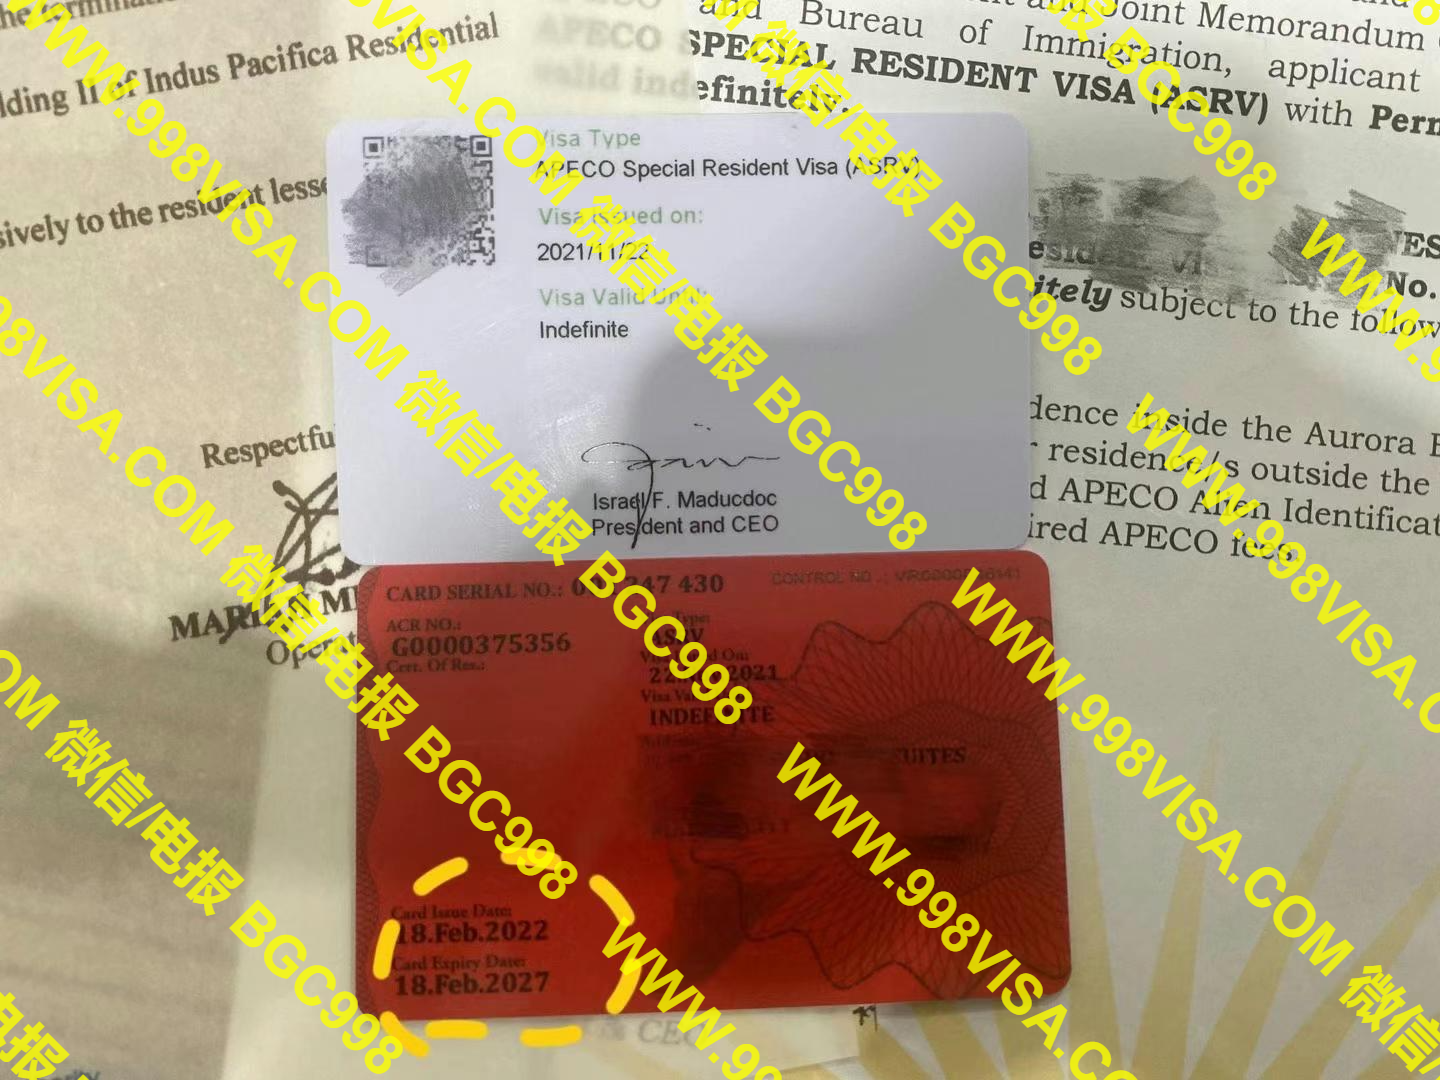 菲律宾小特赦签证APECO 签证证明文件样式